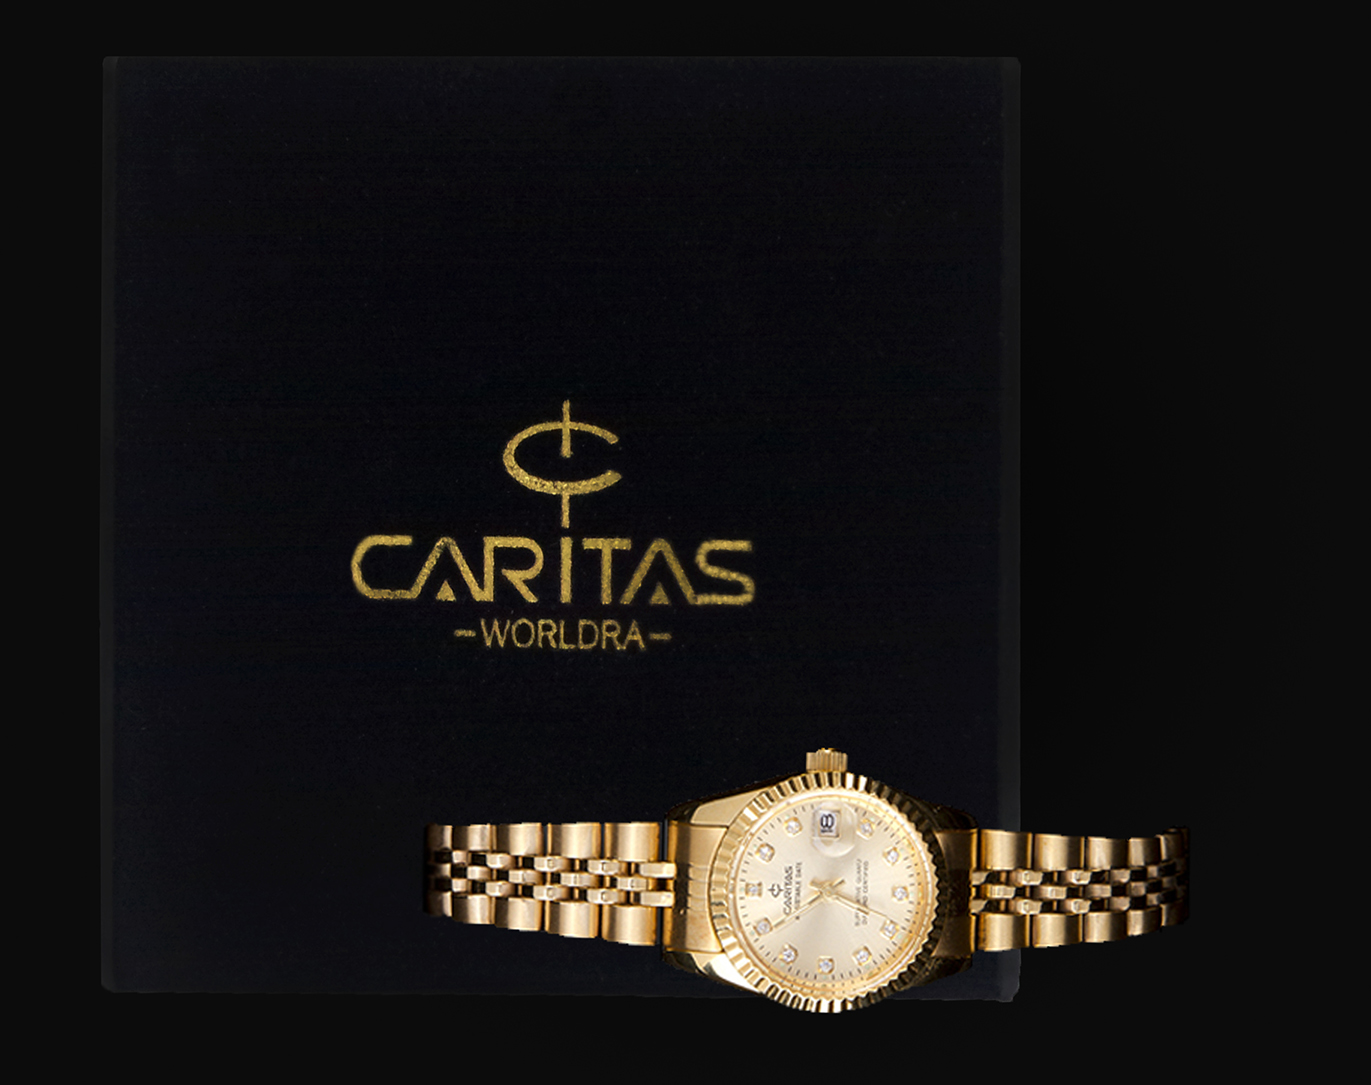 Đồng hồ Caritas dành cho nữ